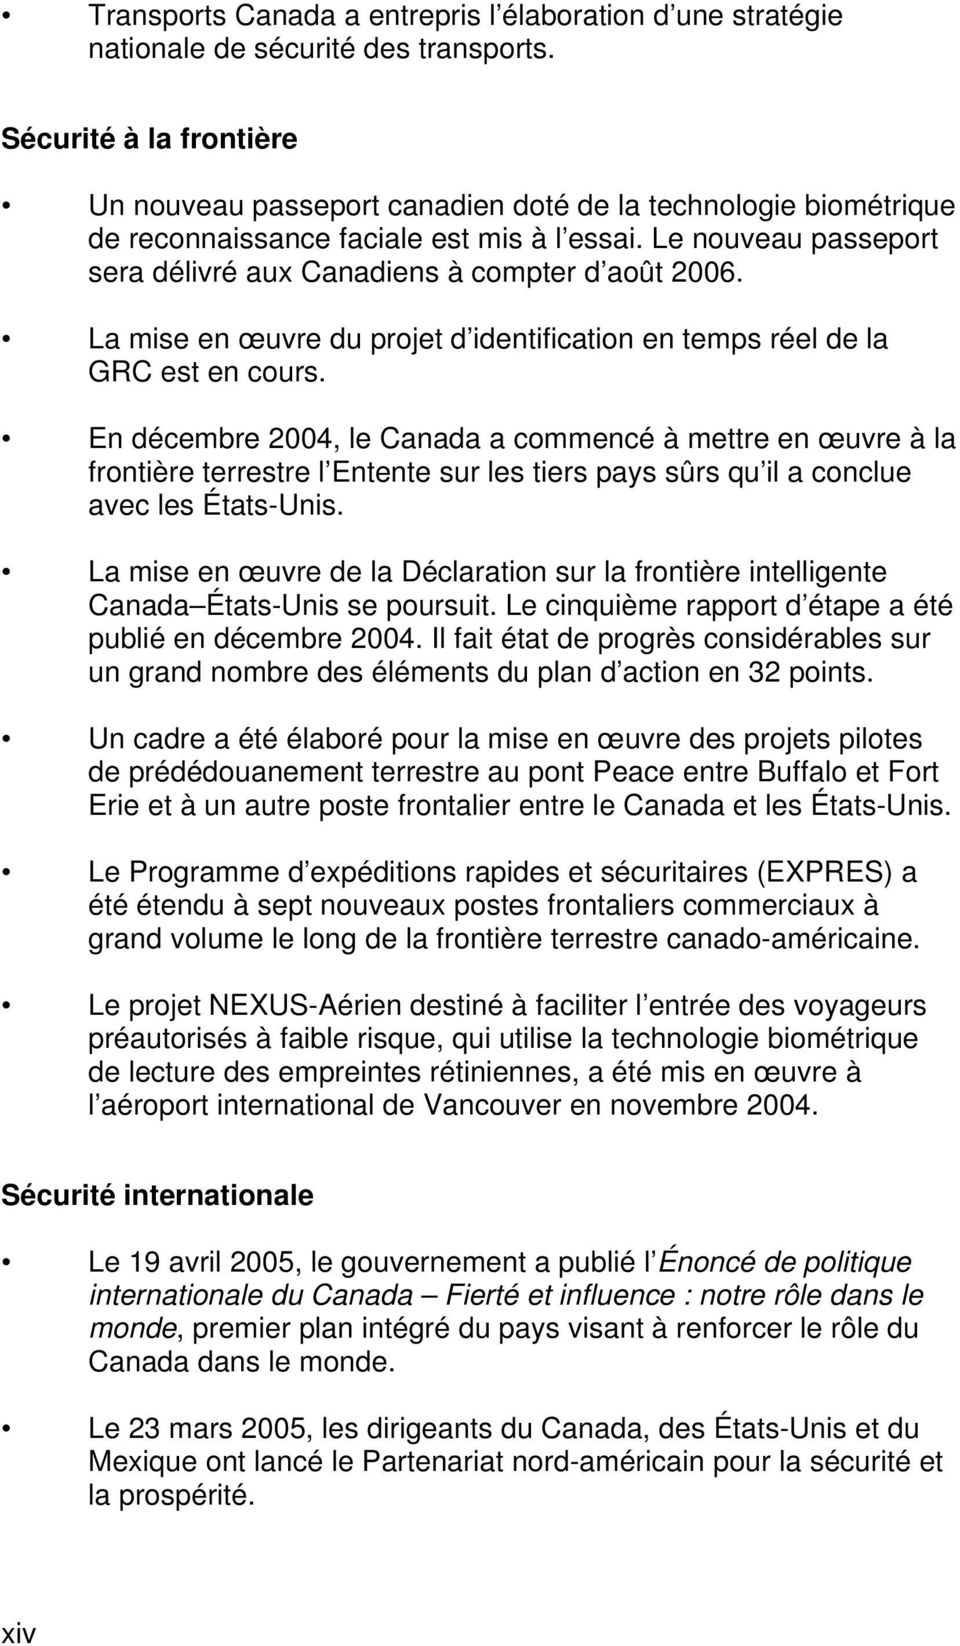 Le nouveau passeport sera délivré aux Canadiens à compter d août 2006. La mise en œuvre du projet d identification en temps réel de la GRC est en cours.